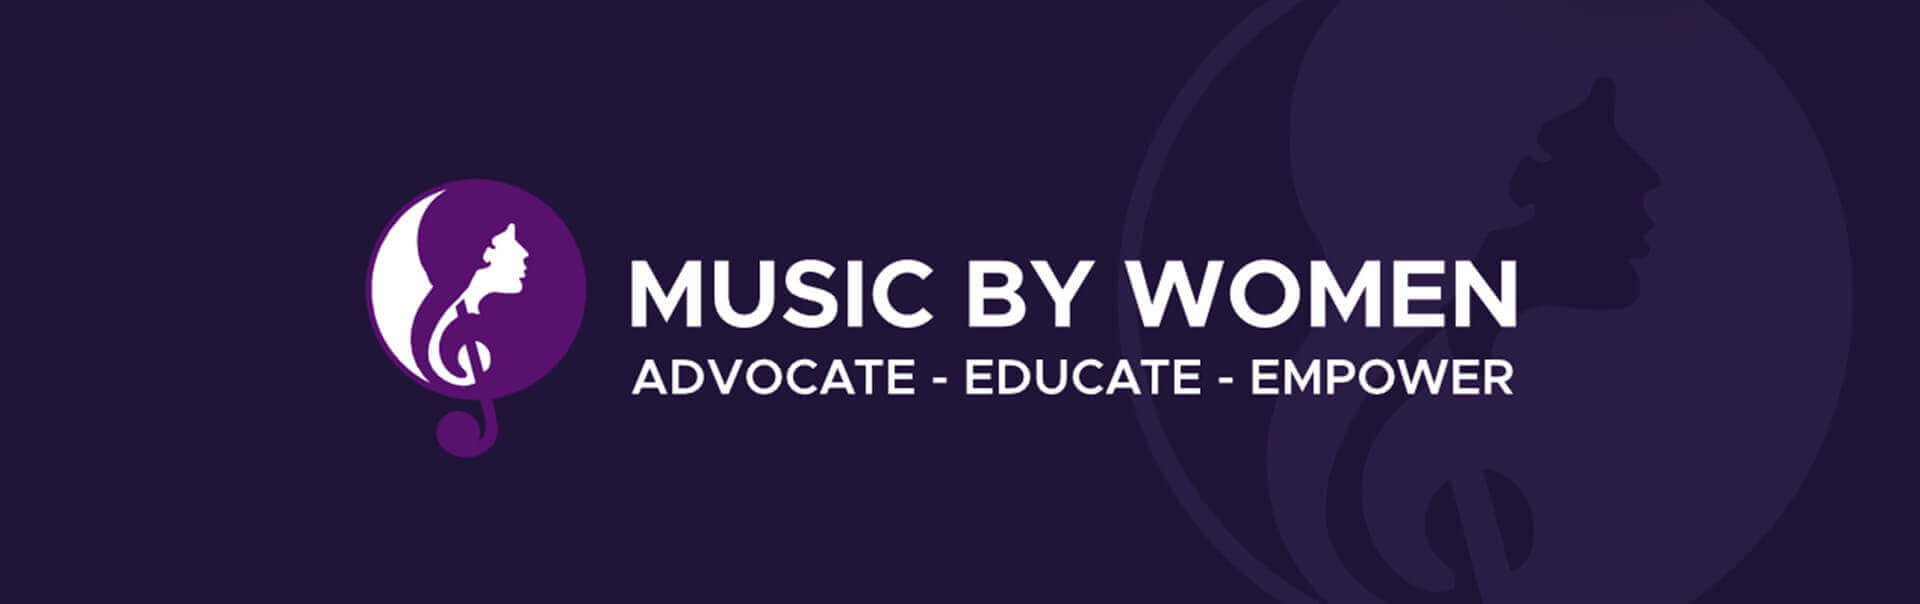 Music By Women Website